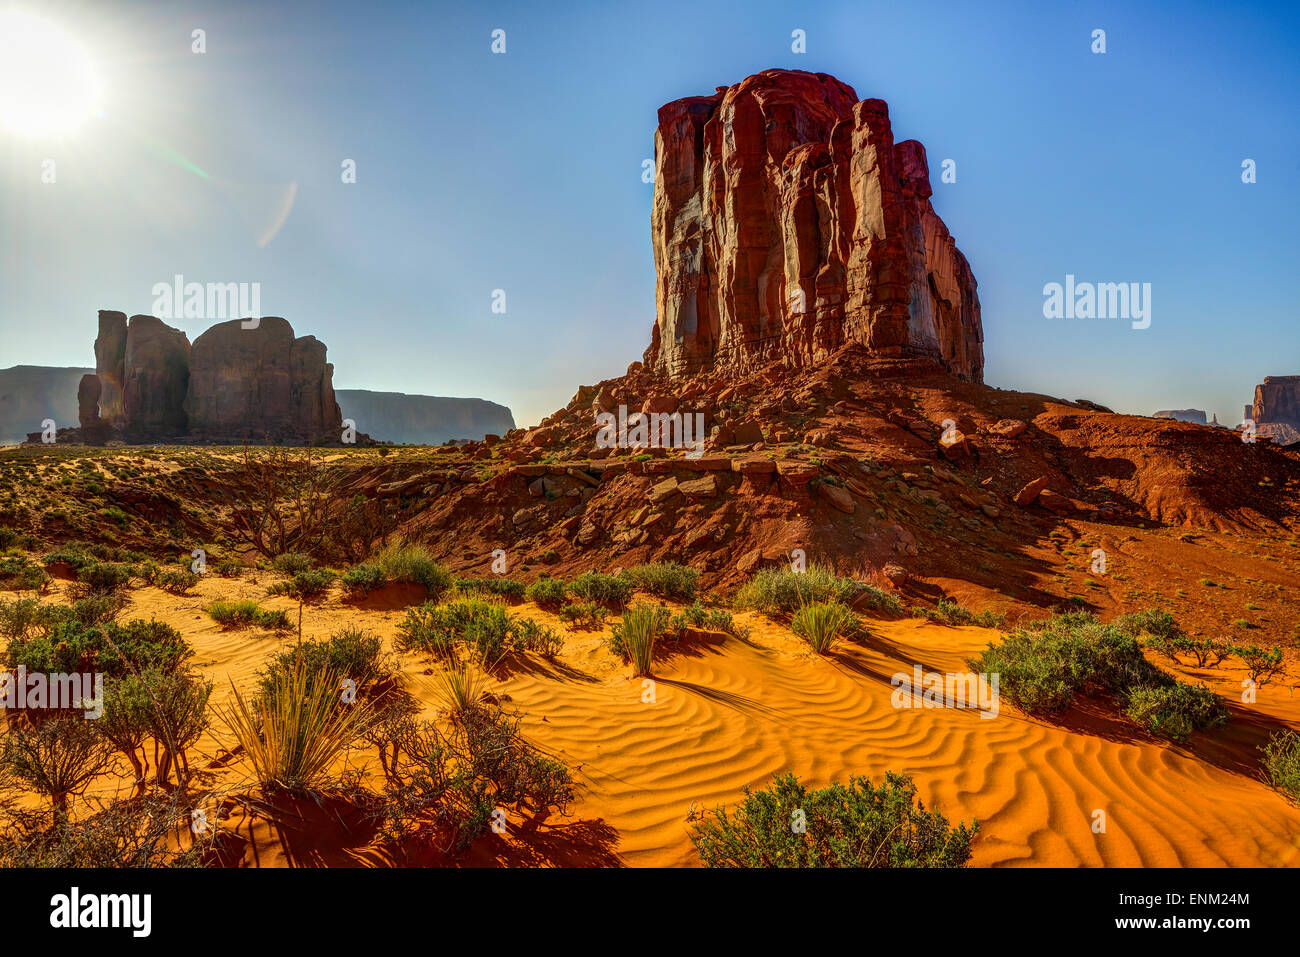 Monument Valley, az, usa Stockfoto